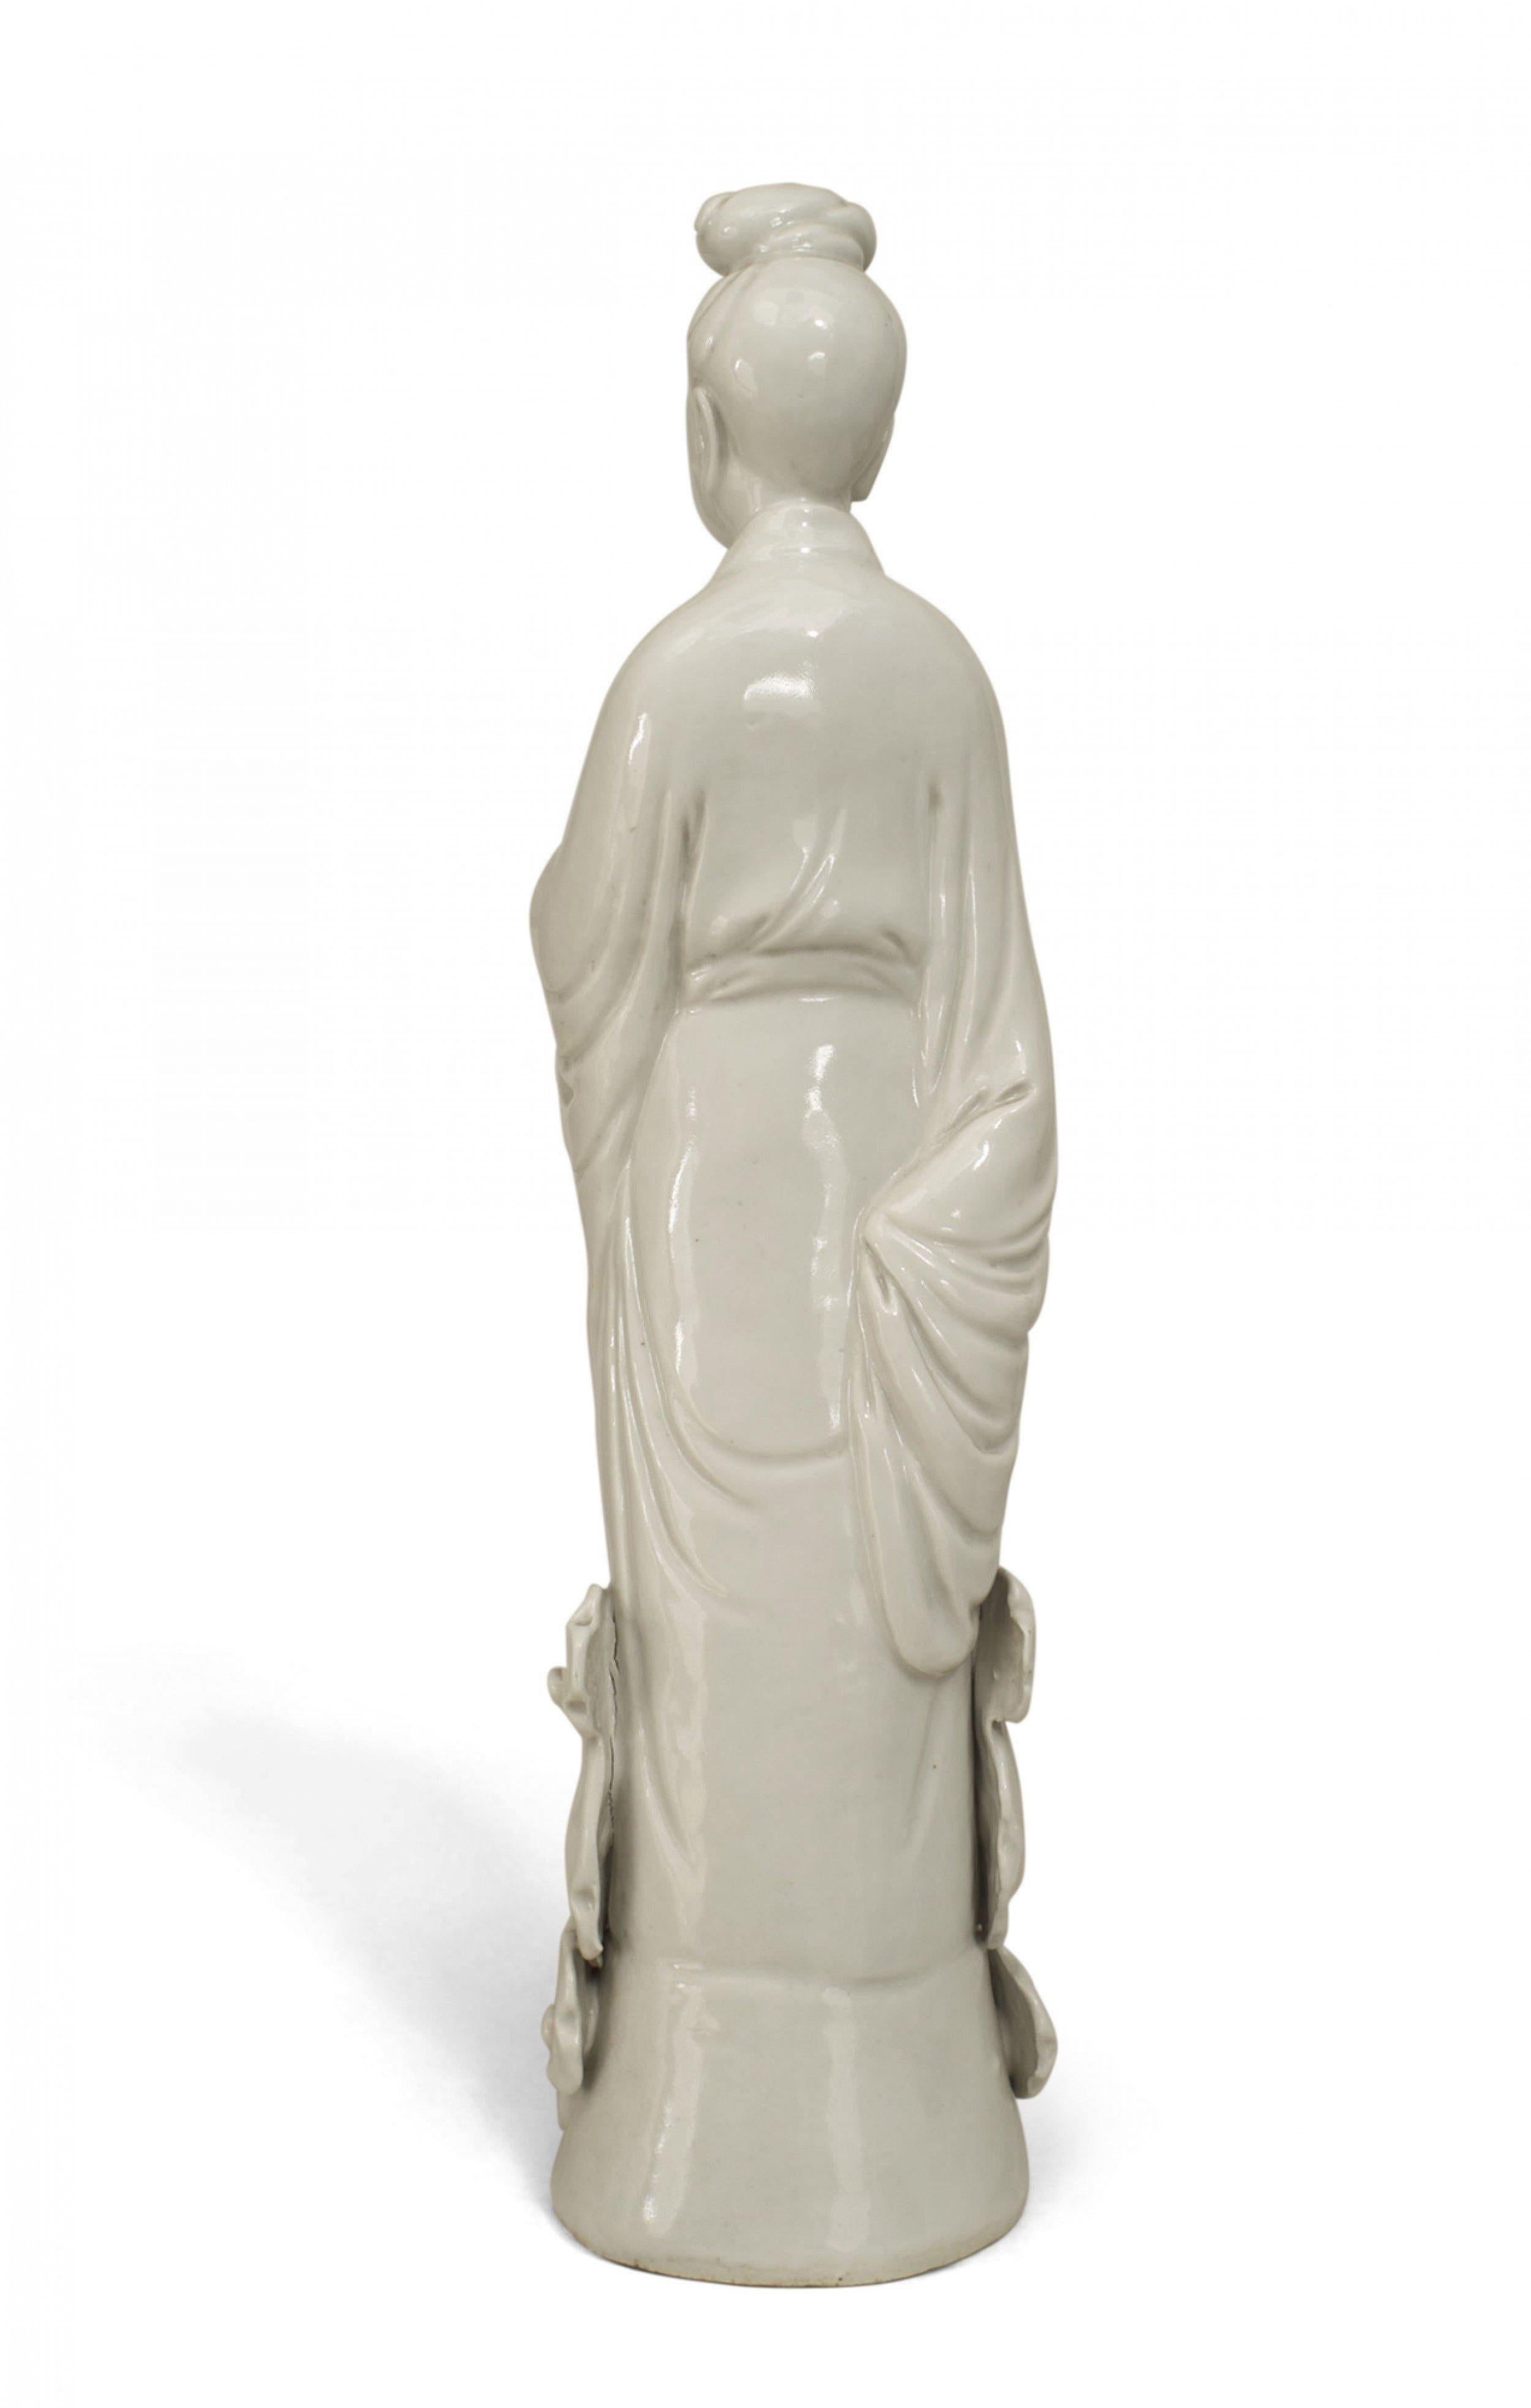 Figurine debout en porcelaine blanche de style asiatique chinois représentant une femme debout sur des nuages, peut-être une figurine d'altération.
 